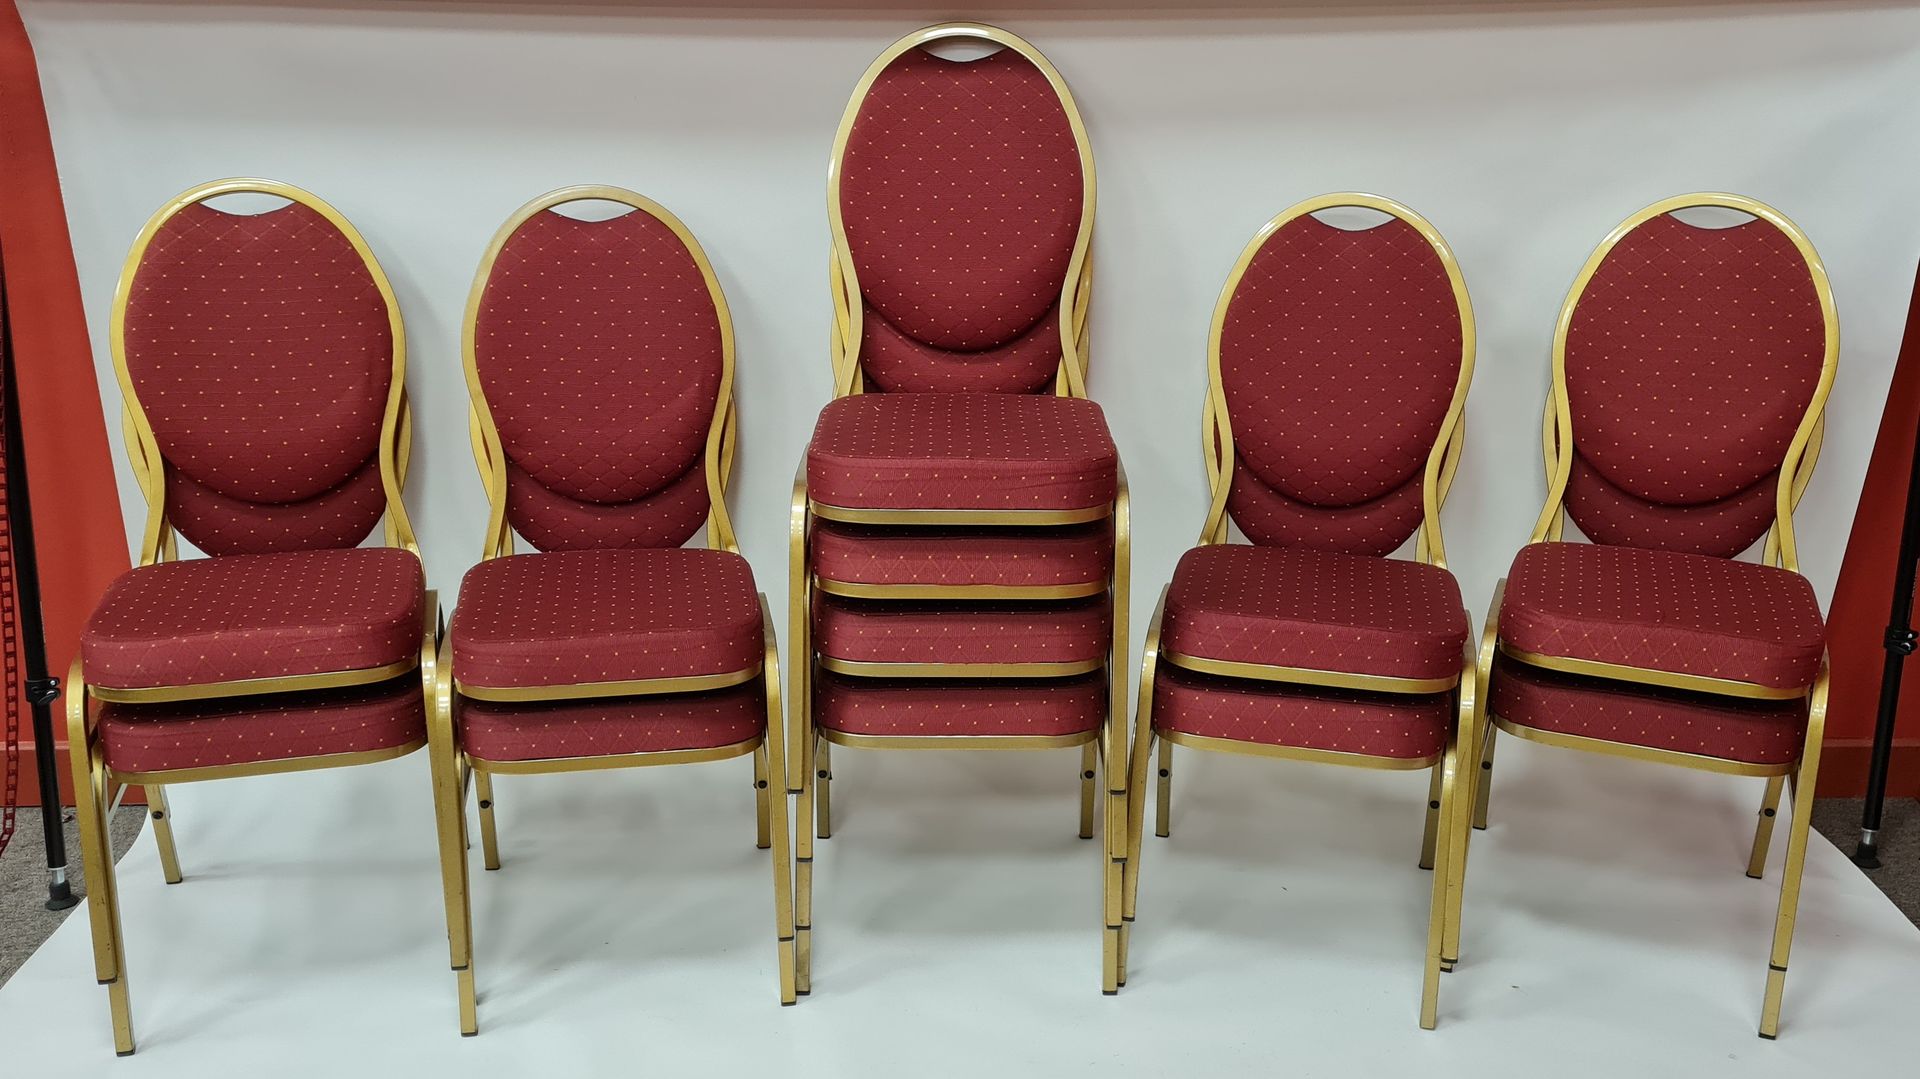 Null lotto 20 sedie impilabili con sedili in tessuto rosso e gambe in metallo